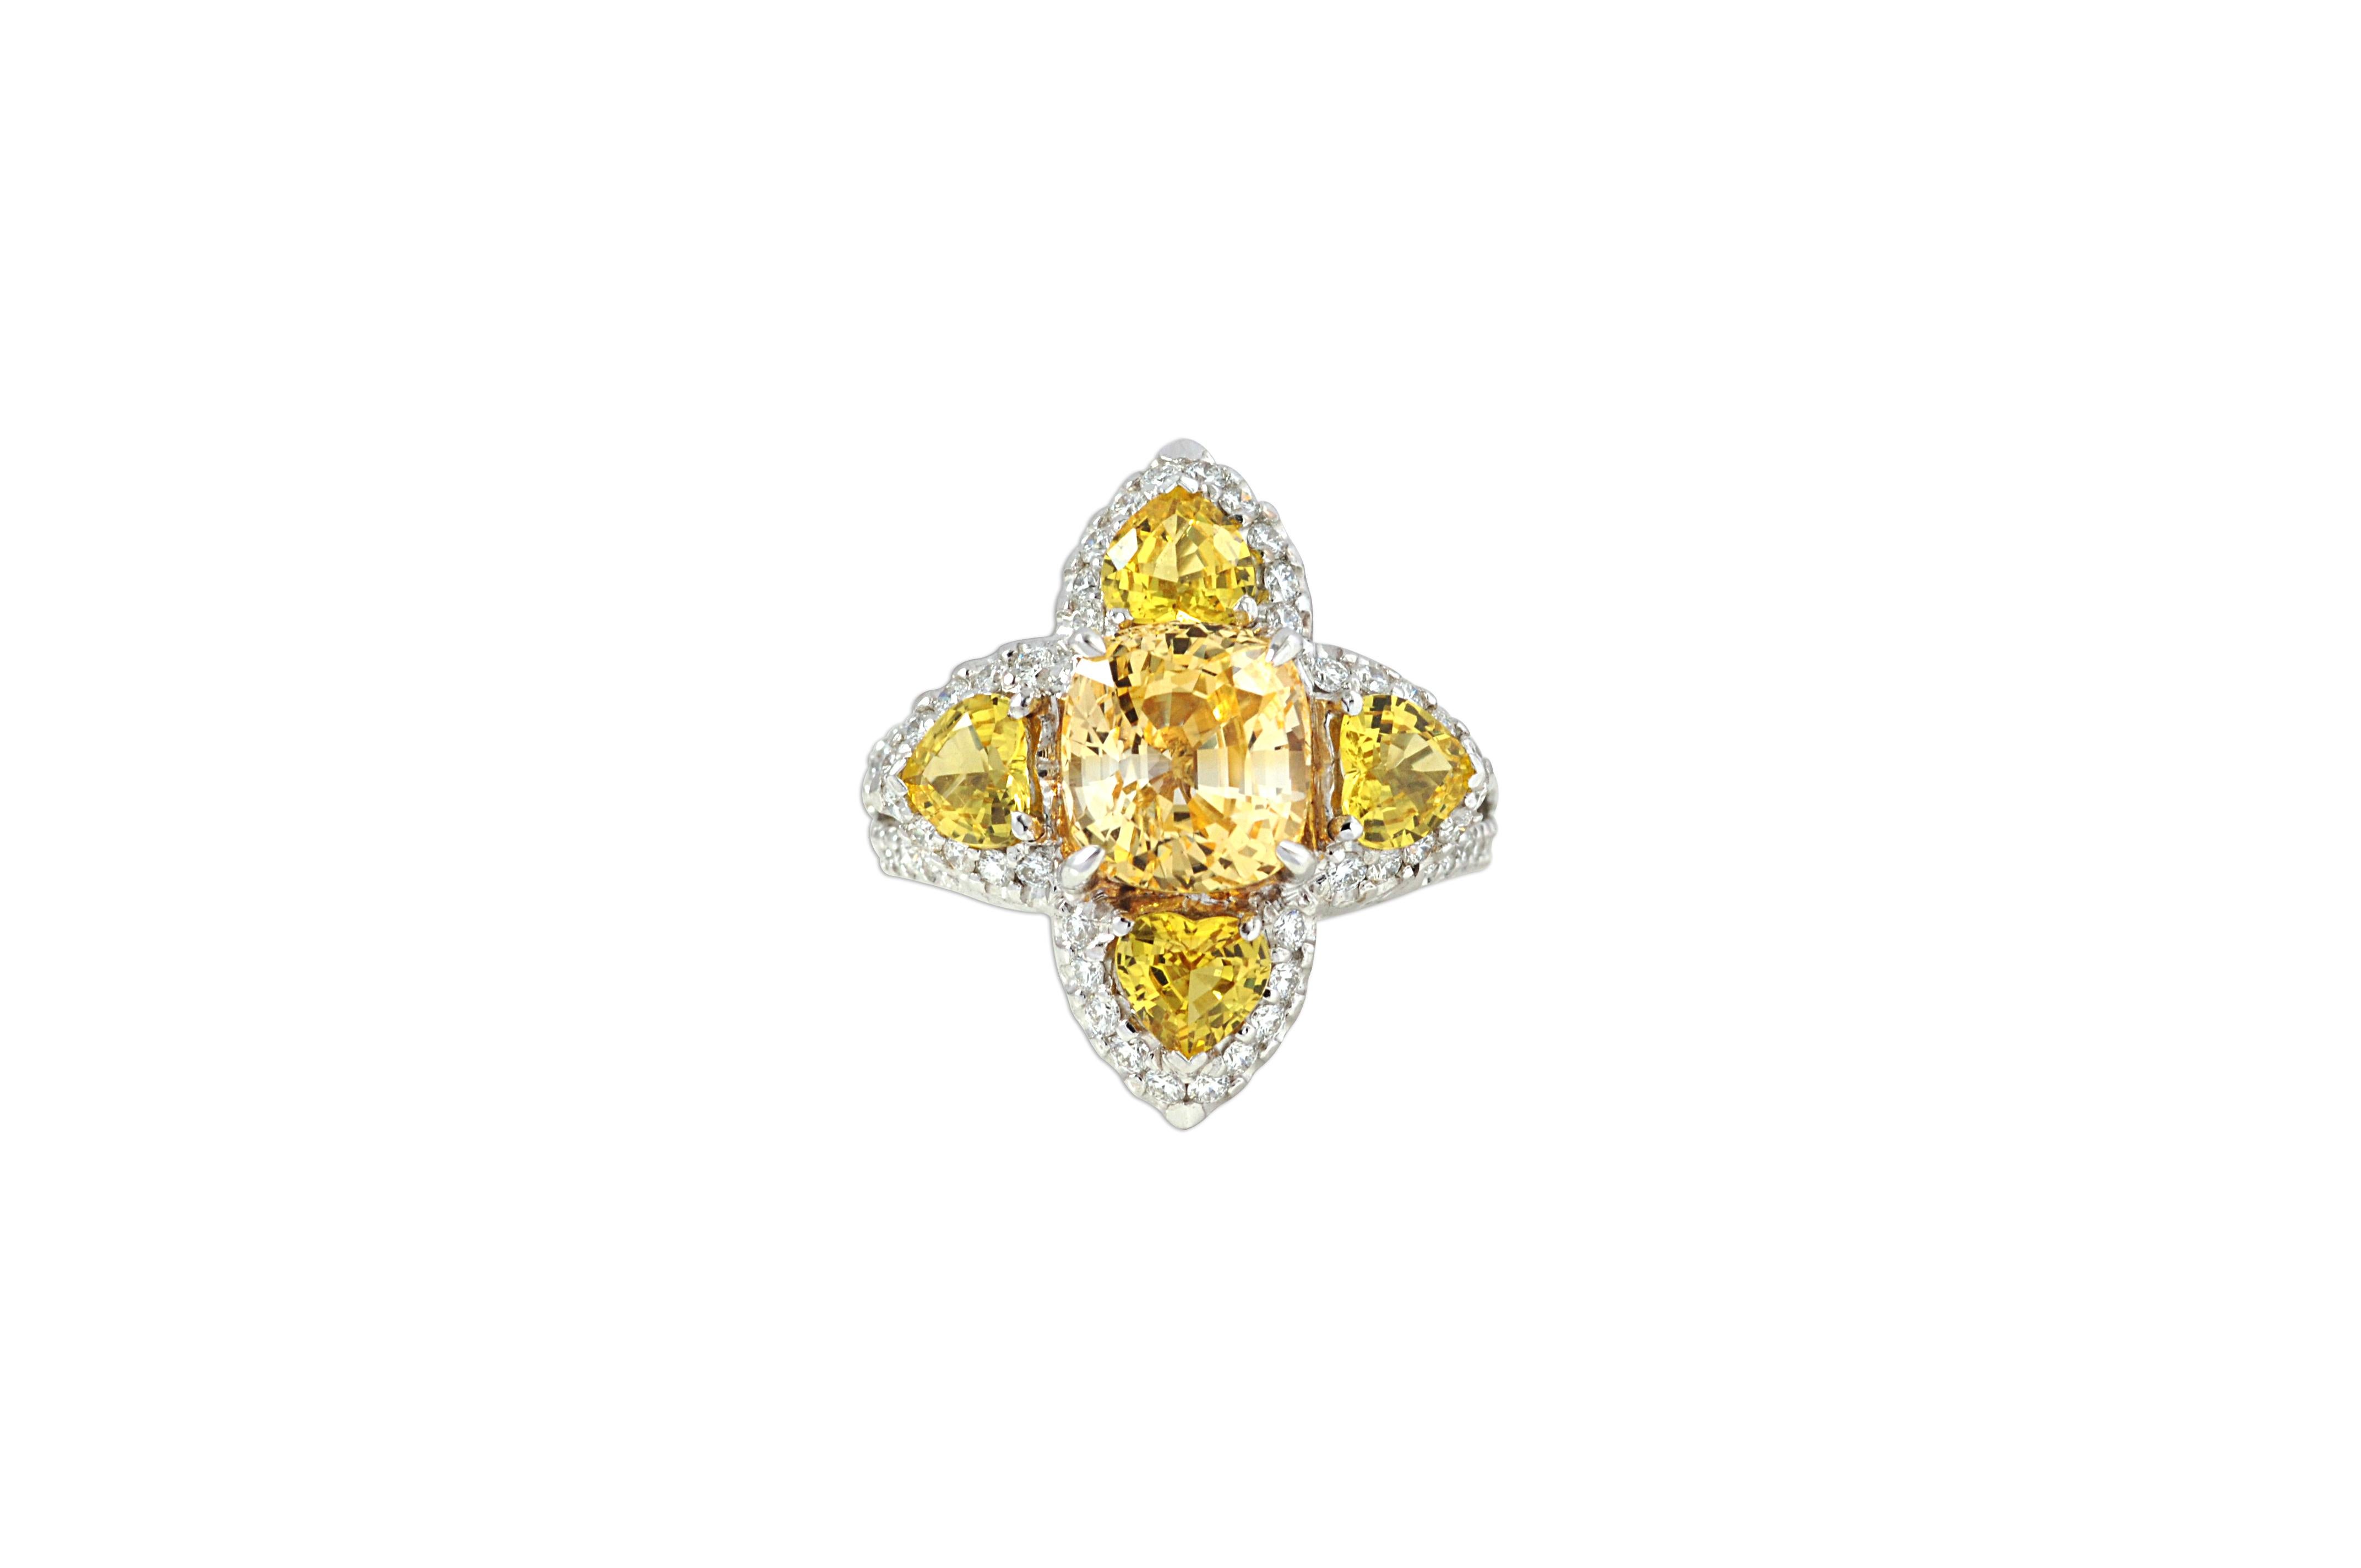 Yellow Sapphire 4.32 carats, Yellow Sapphire 2.20 carats with Diamond 0.84 carat Ring Set in 18 Karat White Gold Settings

Width: 2.3 cm
Length: 2.3 cm
Ring Size: 55
Total Weight: 12.18 grams

